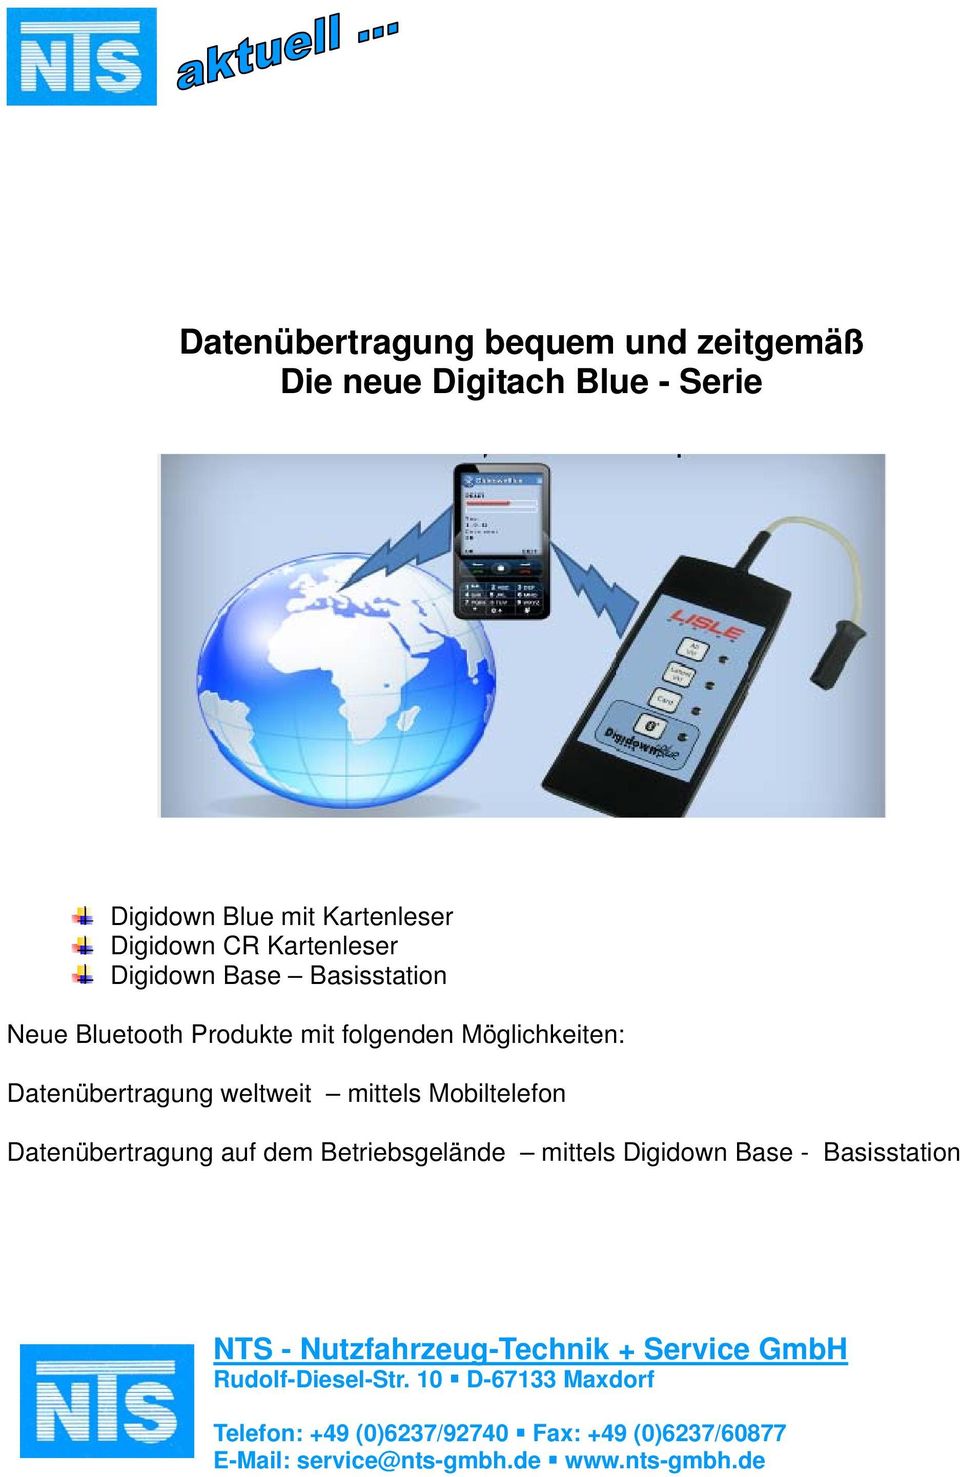 Mobiltelefon Datenübertragung auf dem Betriebsgelände mittels Digidown Base - Basisstation NTS - Nutzfahrzeug-Technik +